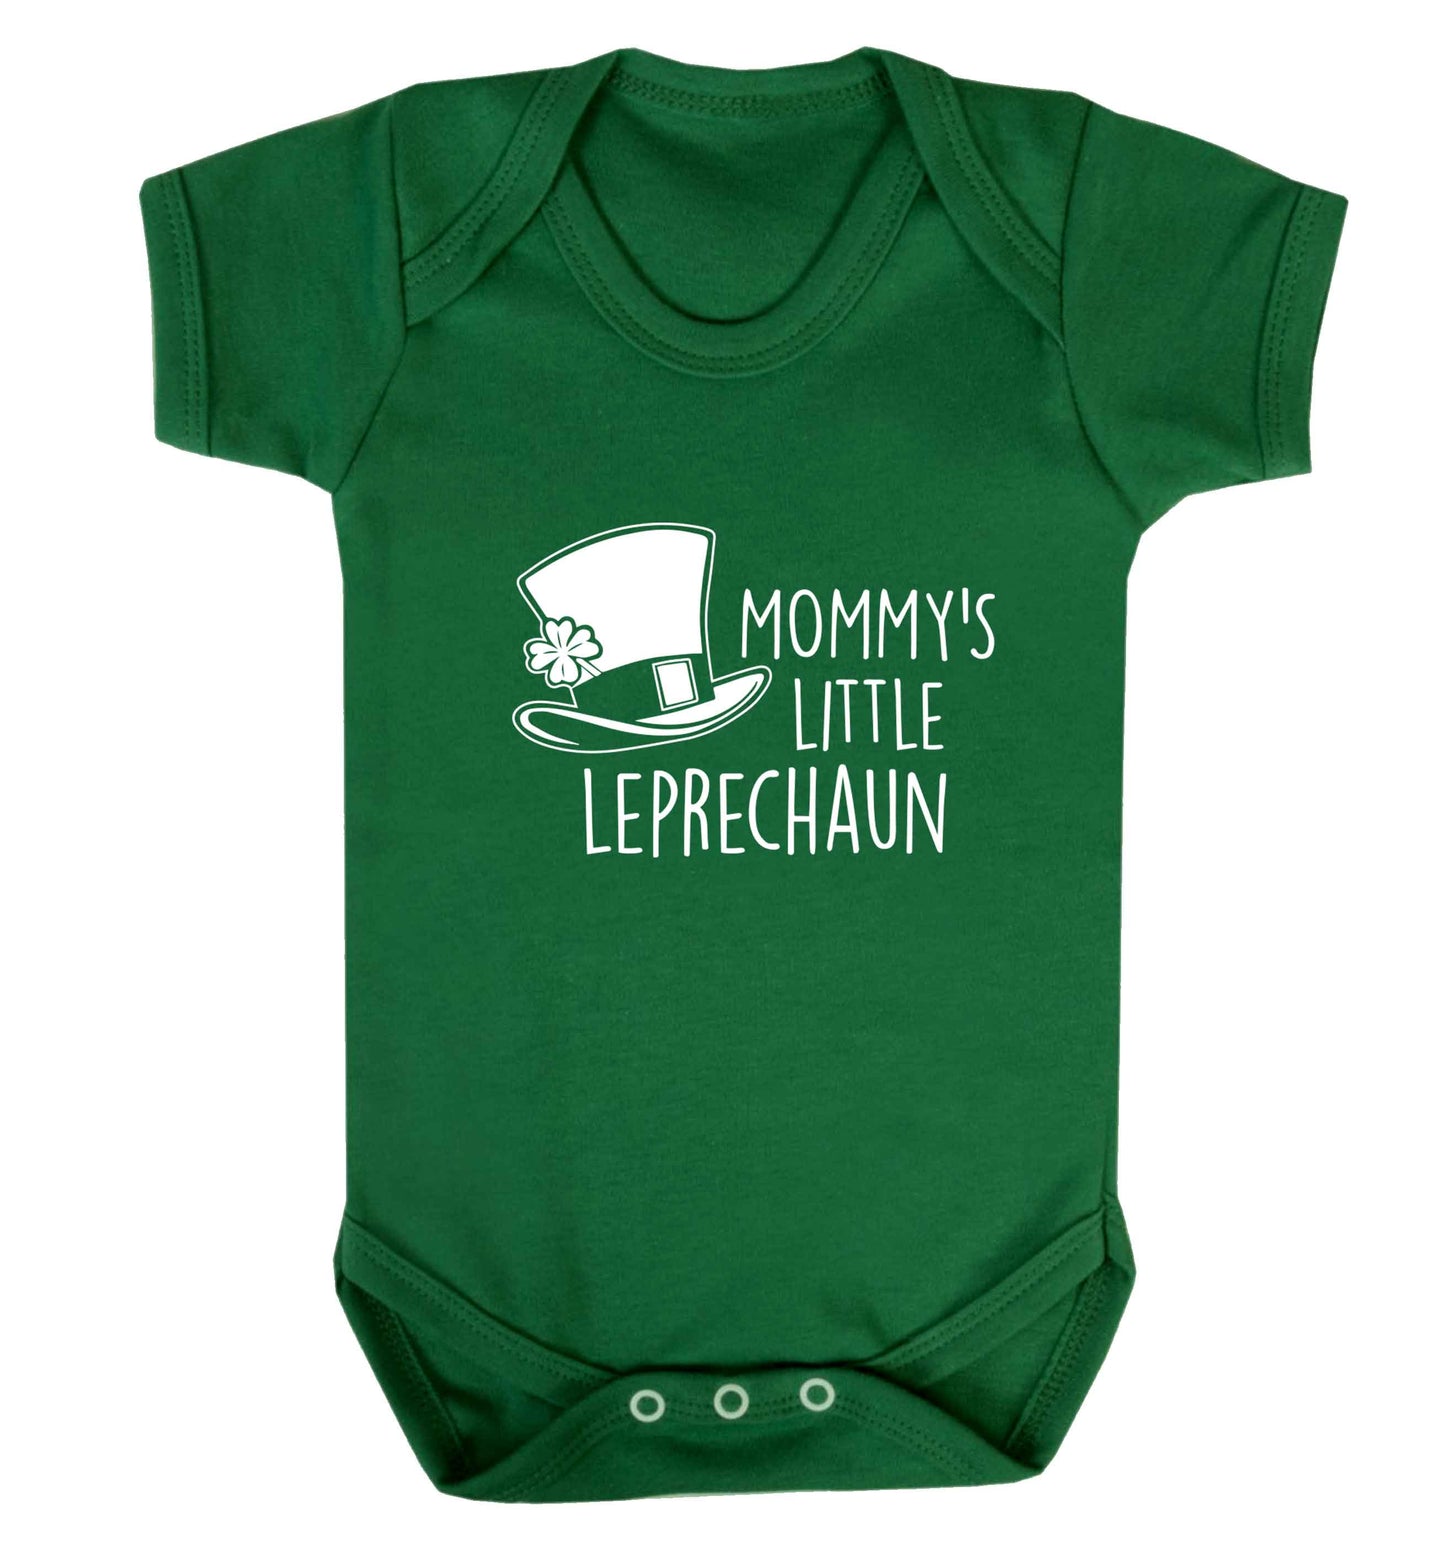 Mommy's little leprechaun baby vest green 18-24 months